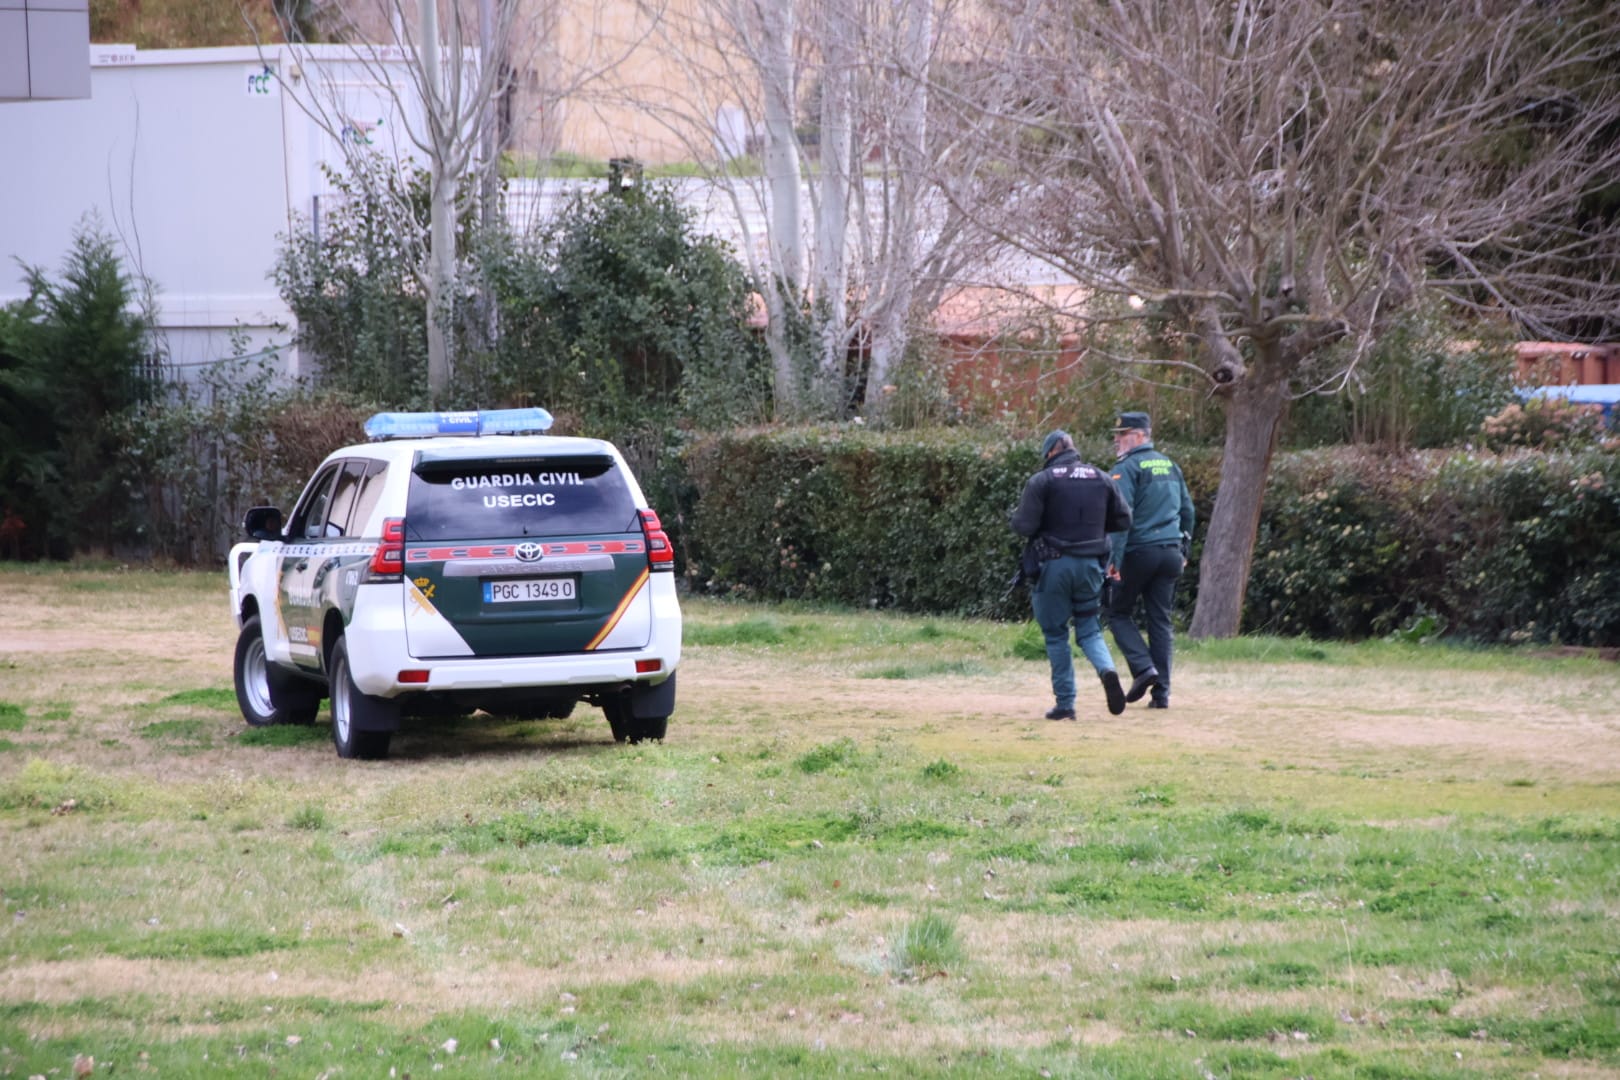 Gran despliegue policial para buscar a un preso fugado en el hospital de Salamanca 